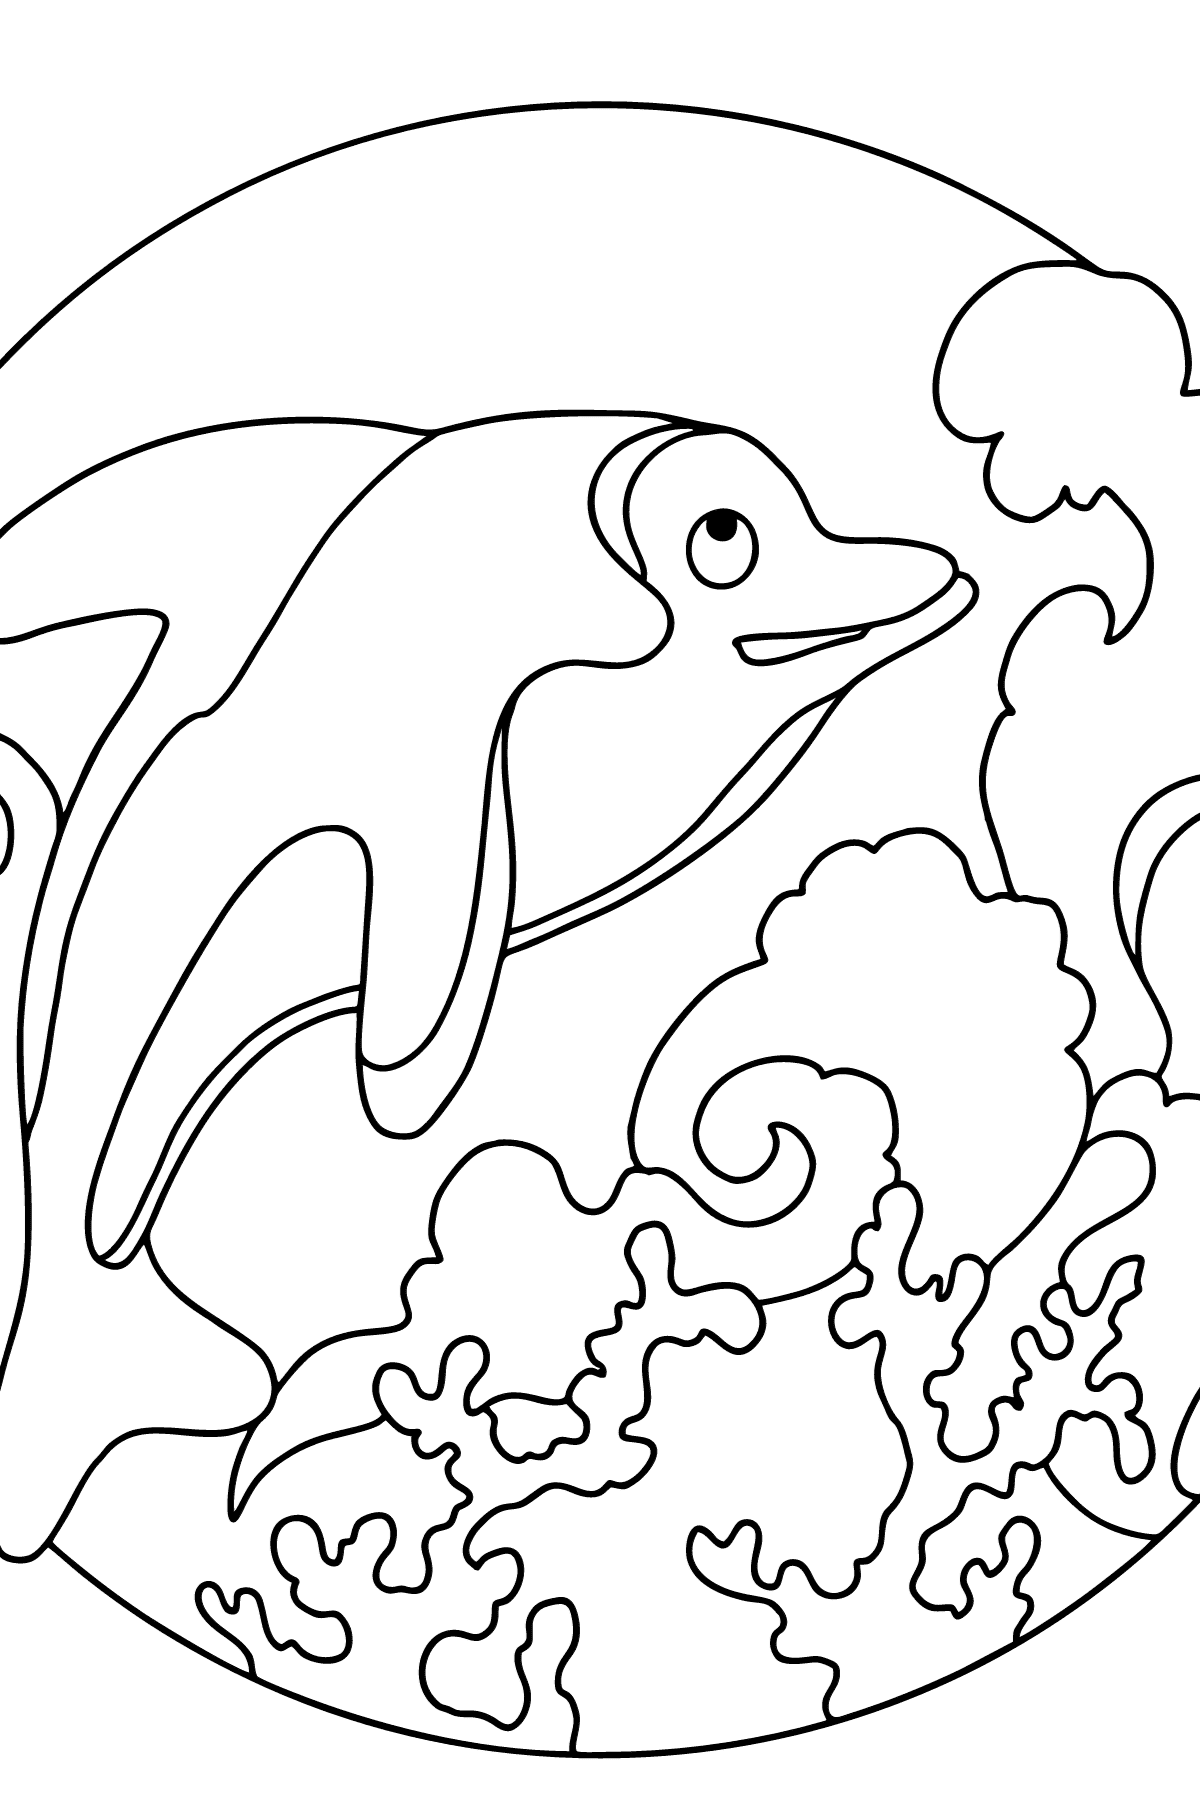 Dibujo para Colorear - El Delfín, un Animal Inteligente y Amistoso - Colorear para Niños